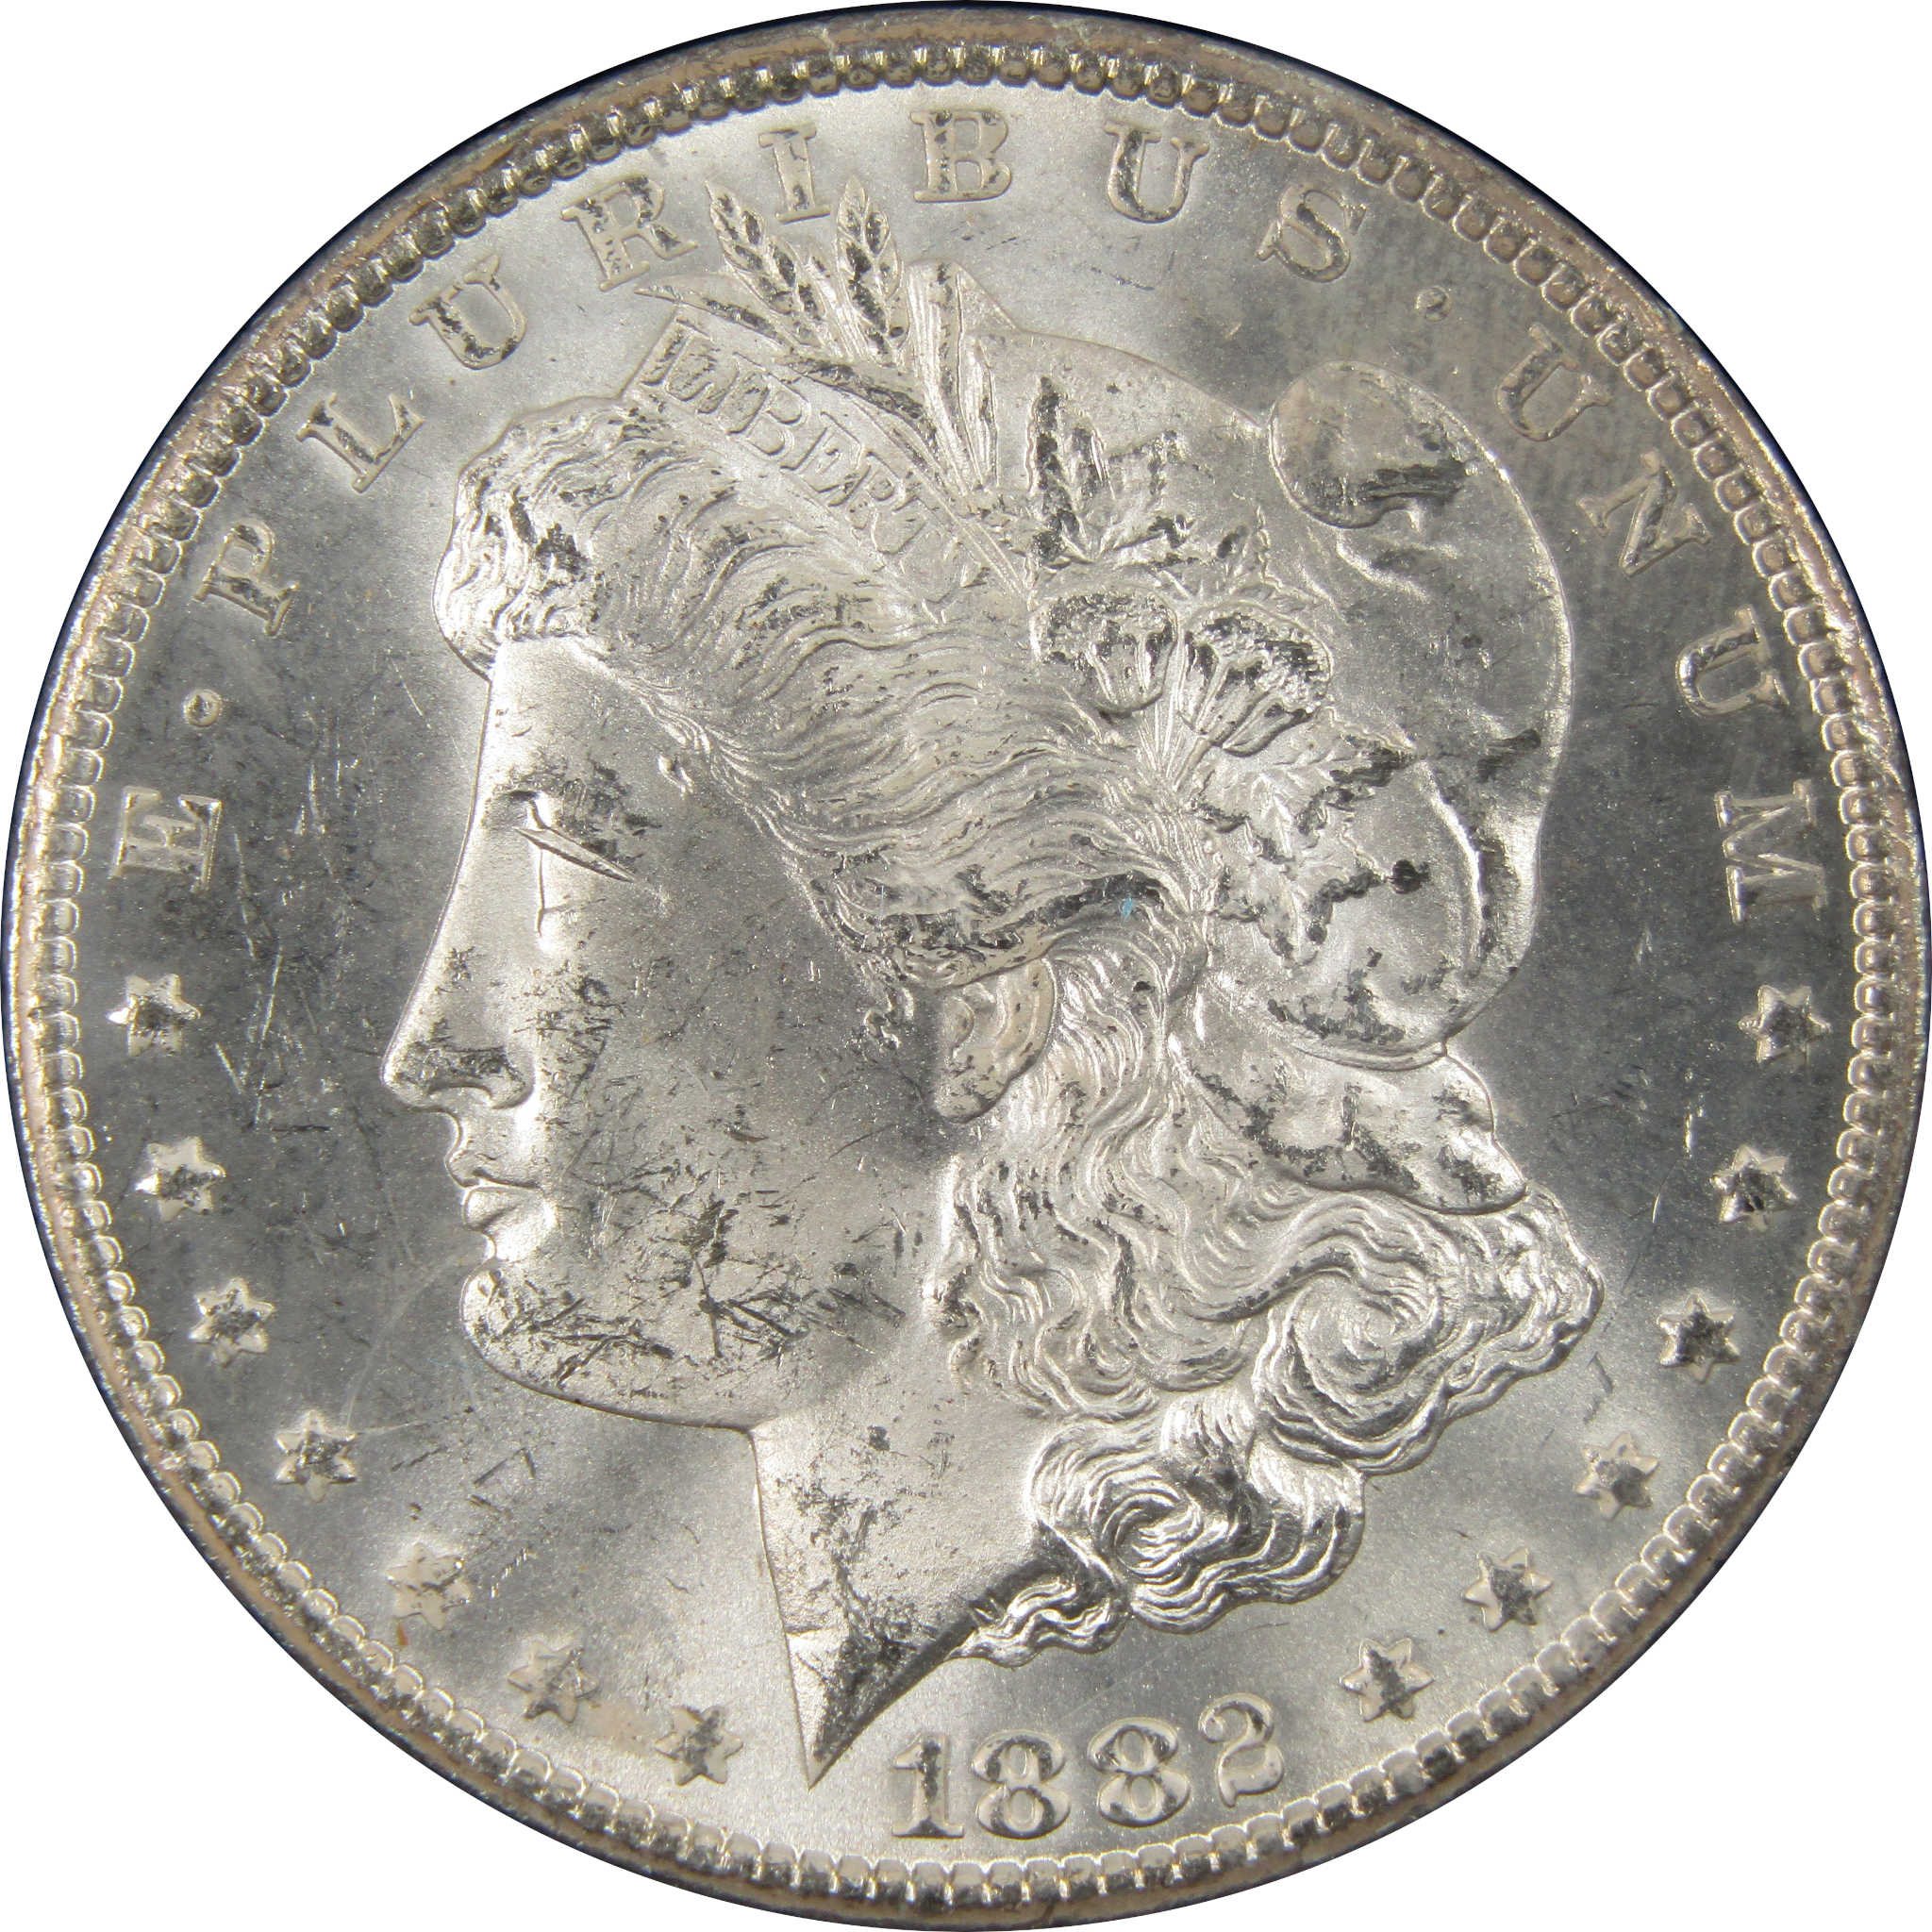 1882 CC GSA Morgan Dollar BU Uncirculated Silver $1 Coin SKU:I9864 - Morgan coin - Morgan silver dollar - Morgan silver dollar for sale - Profile Coins &amp; Collectibles